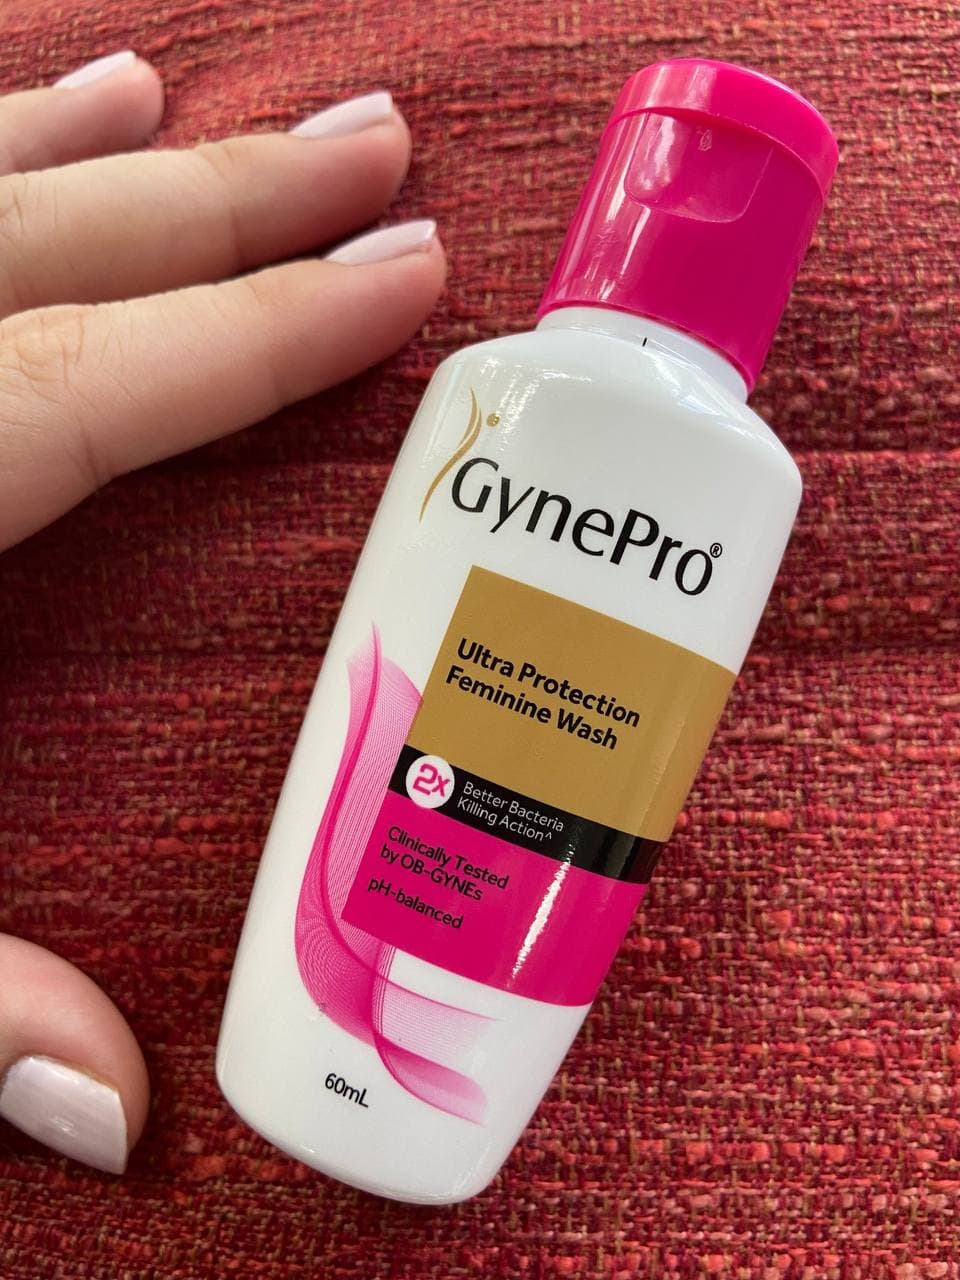 GynePro feminine wash